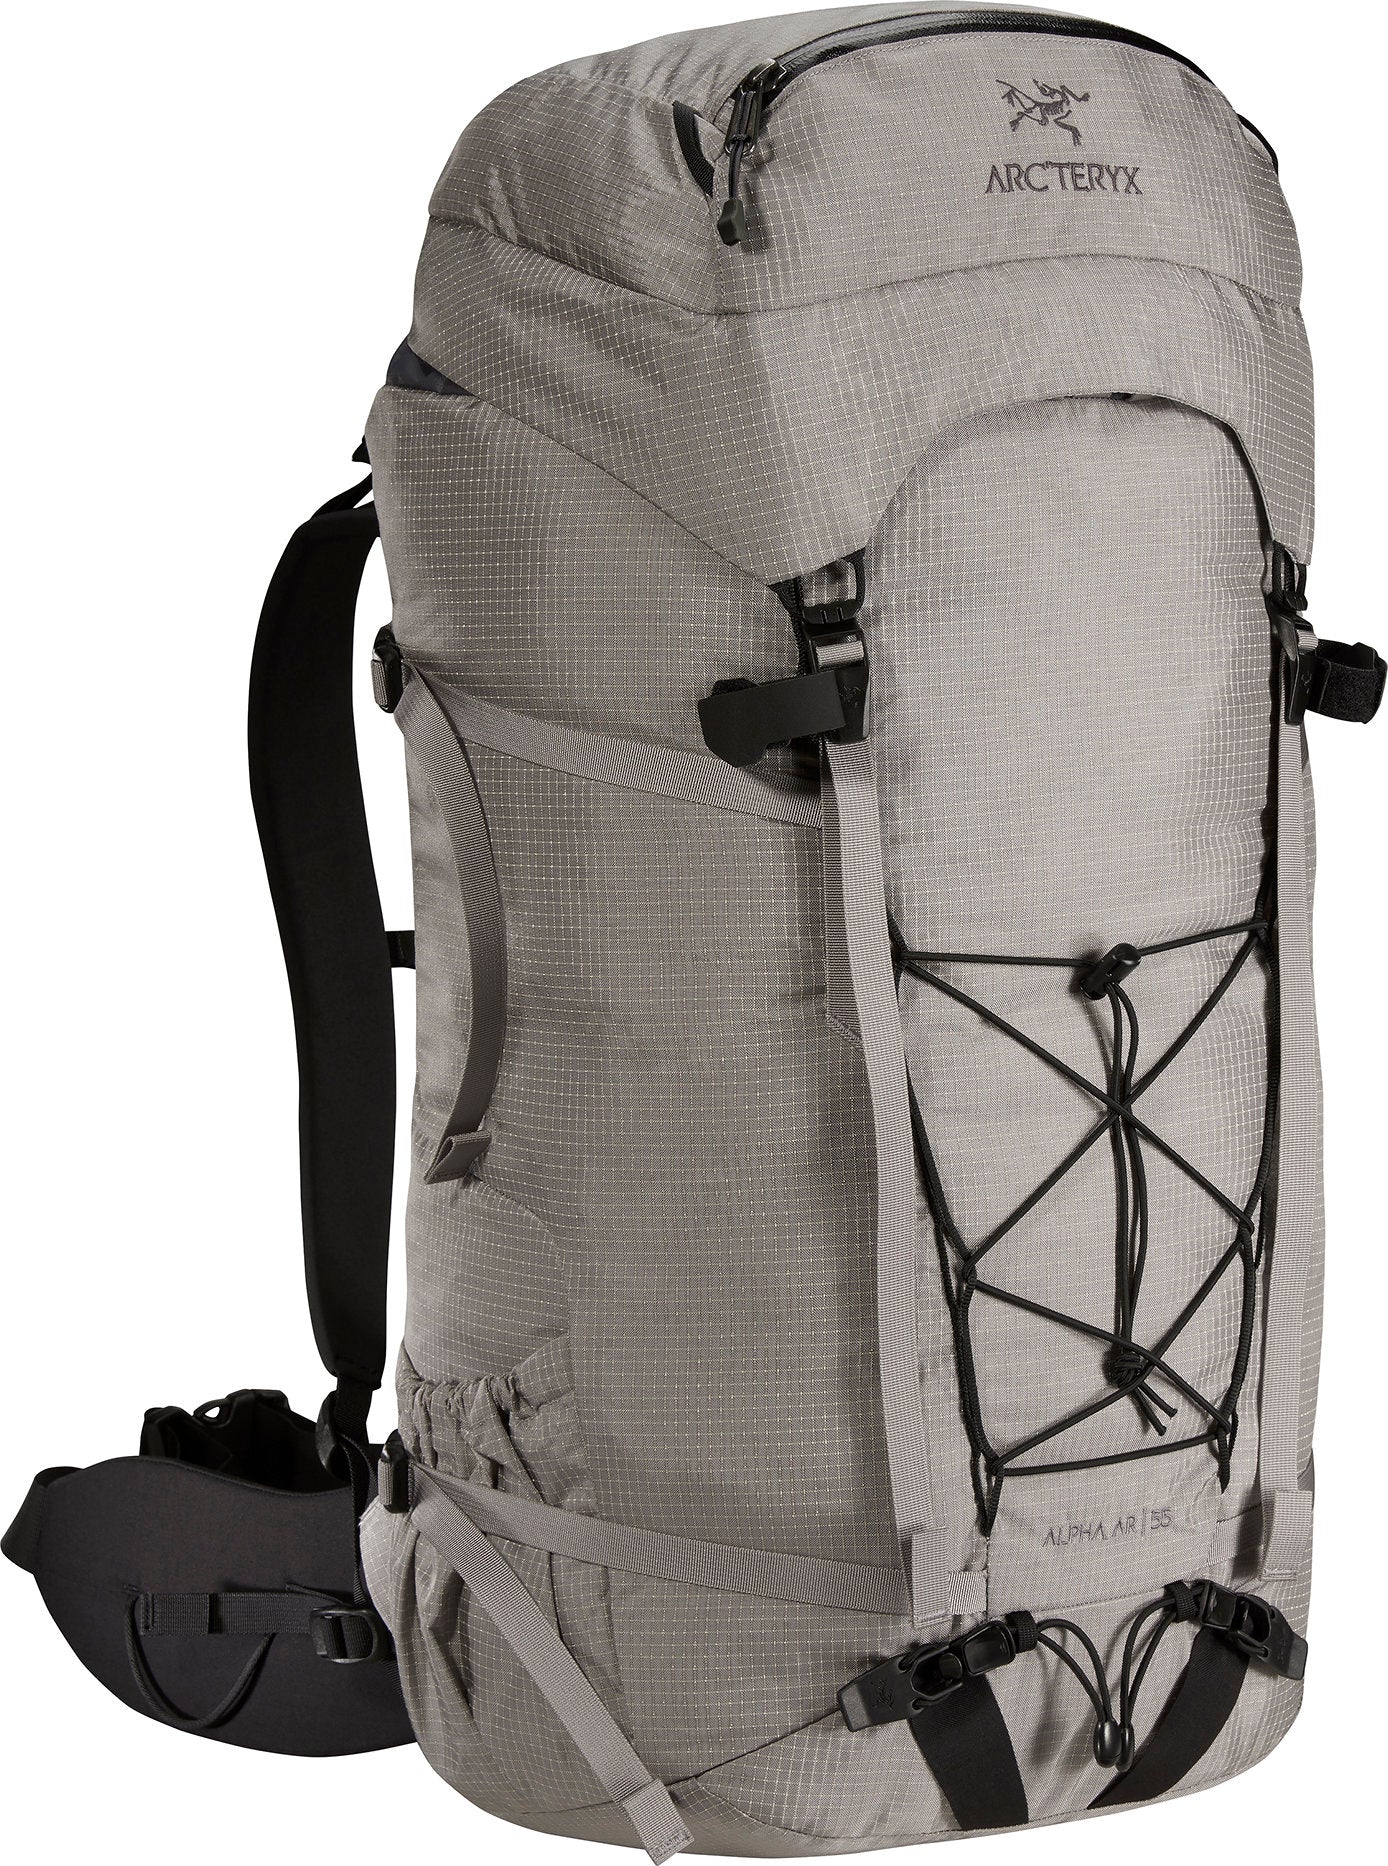 Arc'teryx Alpha AR 55 Backpack